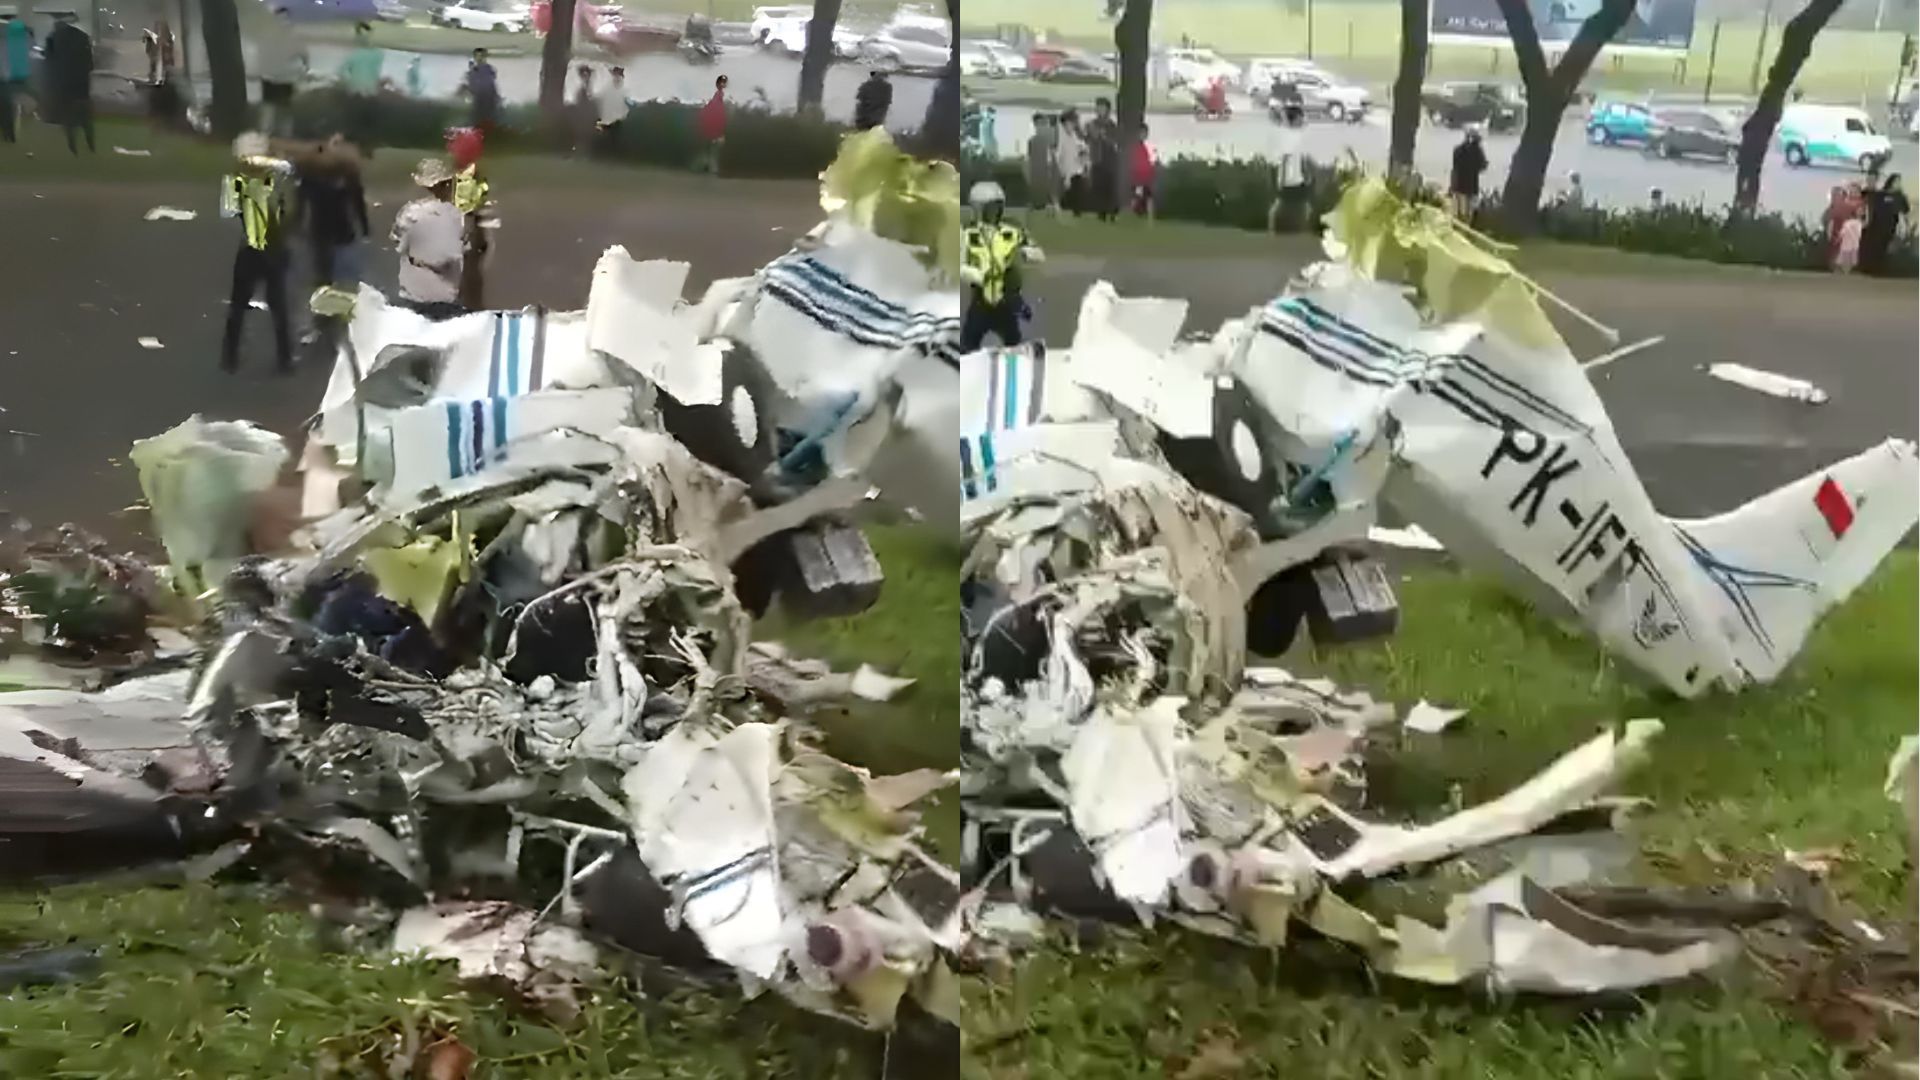 Pesawat jenis Cessna yang jatuh di Lapangan Sunburst, BSD, Tangerang Selatan./ X/ Pikiran Rakyat